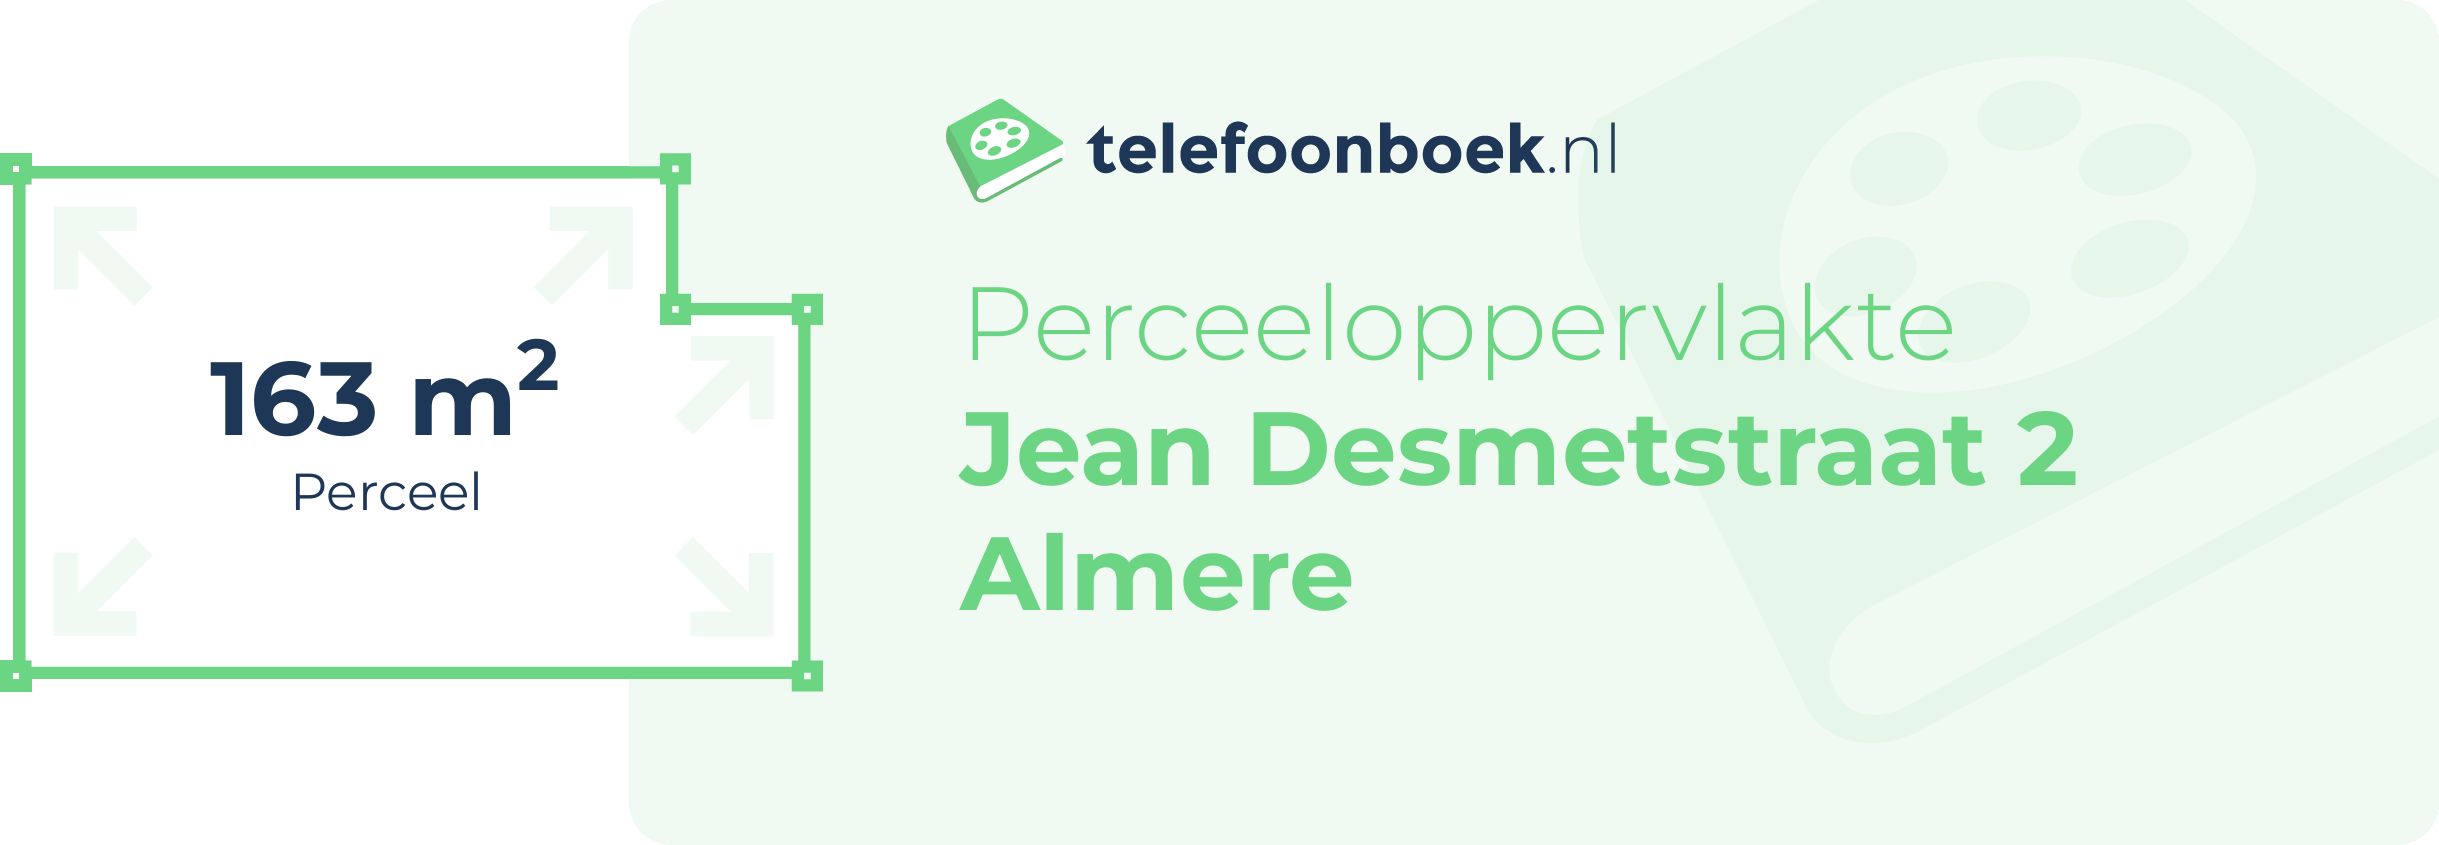 Perceeloppervlakte Jean Desmetstraat 2 Almere